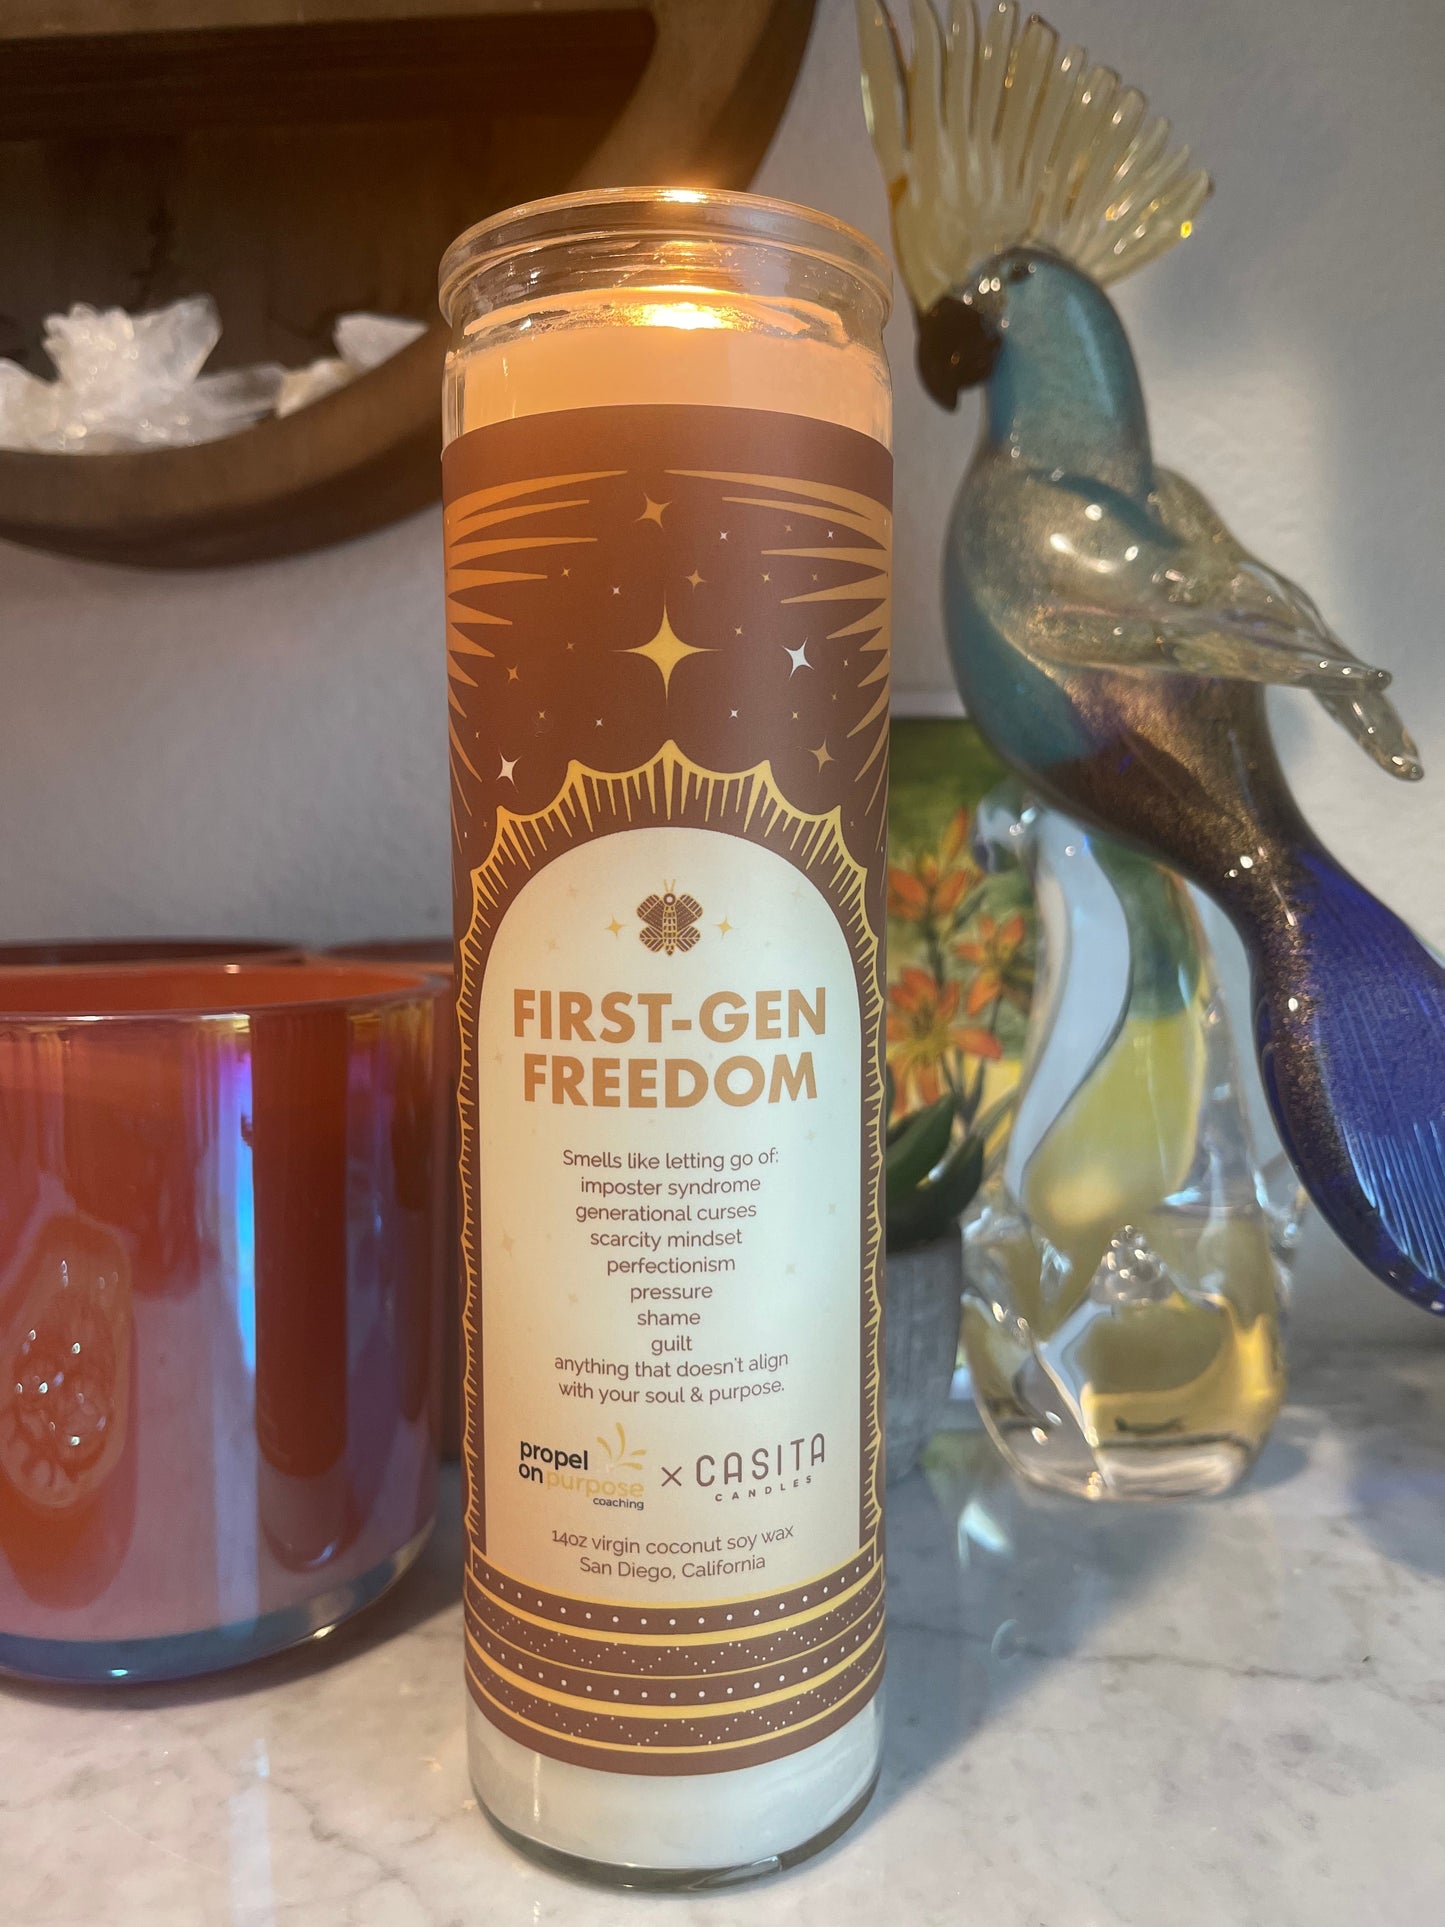 FIRST-GEN FREEDOM